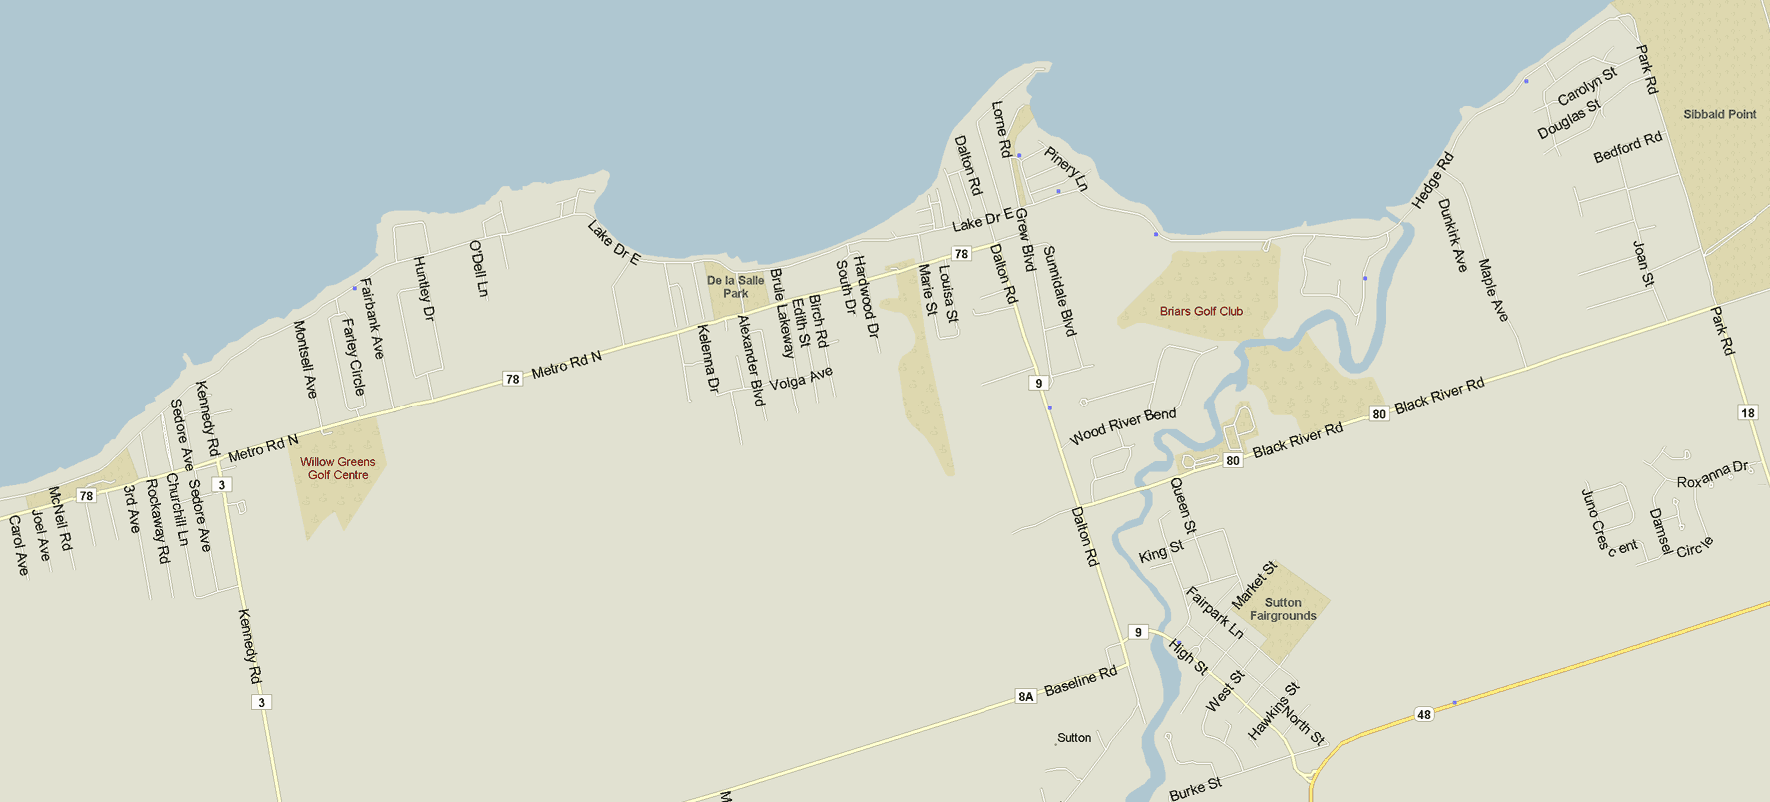 Sutton Map, Ontario